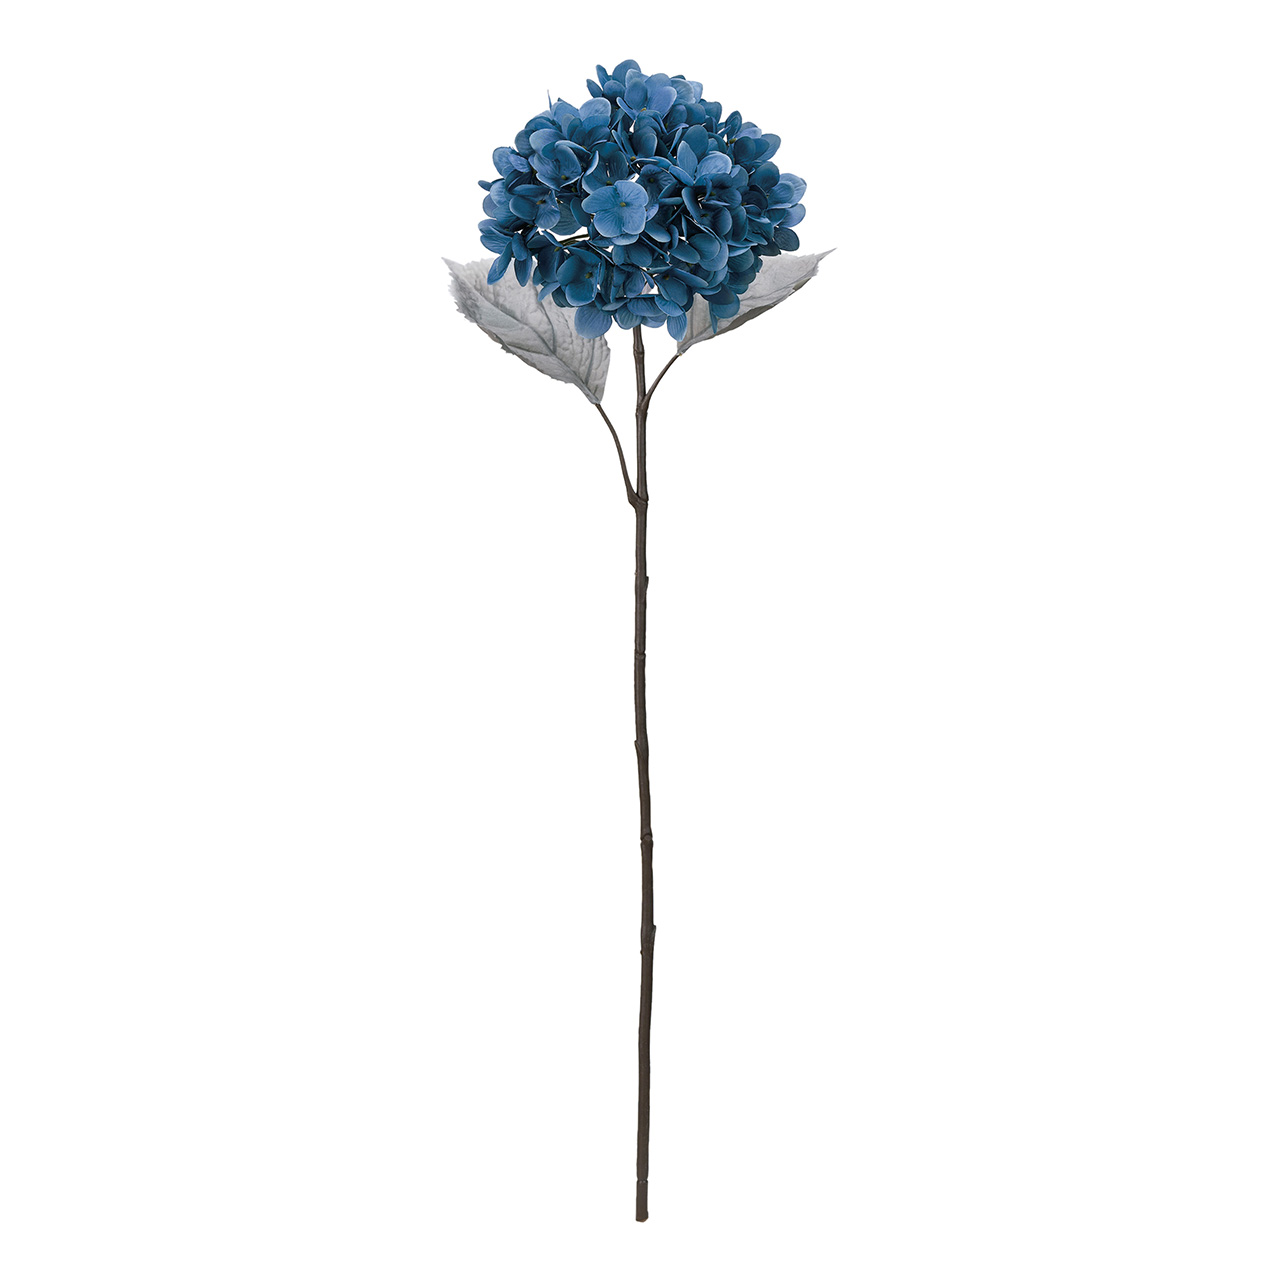 マイフラ】 通販/MAGIQ インディゴハイドレンジア ブルー アーティフィシャルフラワー 造花 あじさい ハイドレンジア FM009755-010( ブルー): MAGIQ(アーティフィシャルフラワー 造花)/全国にMAGIQ、花器、花資材などをお届けします。